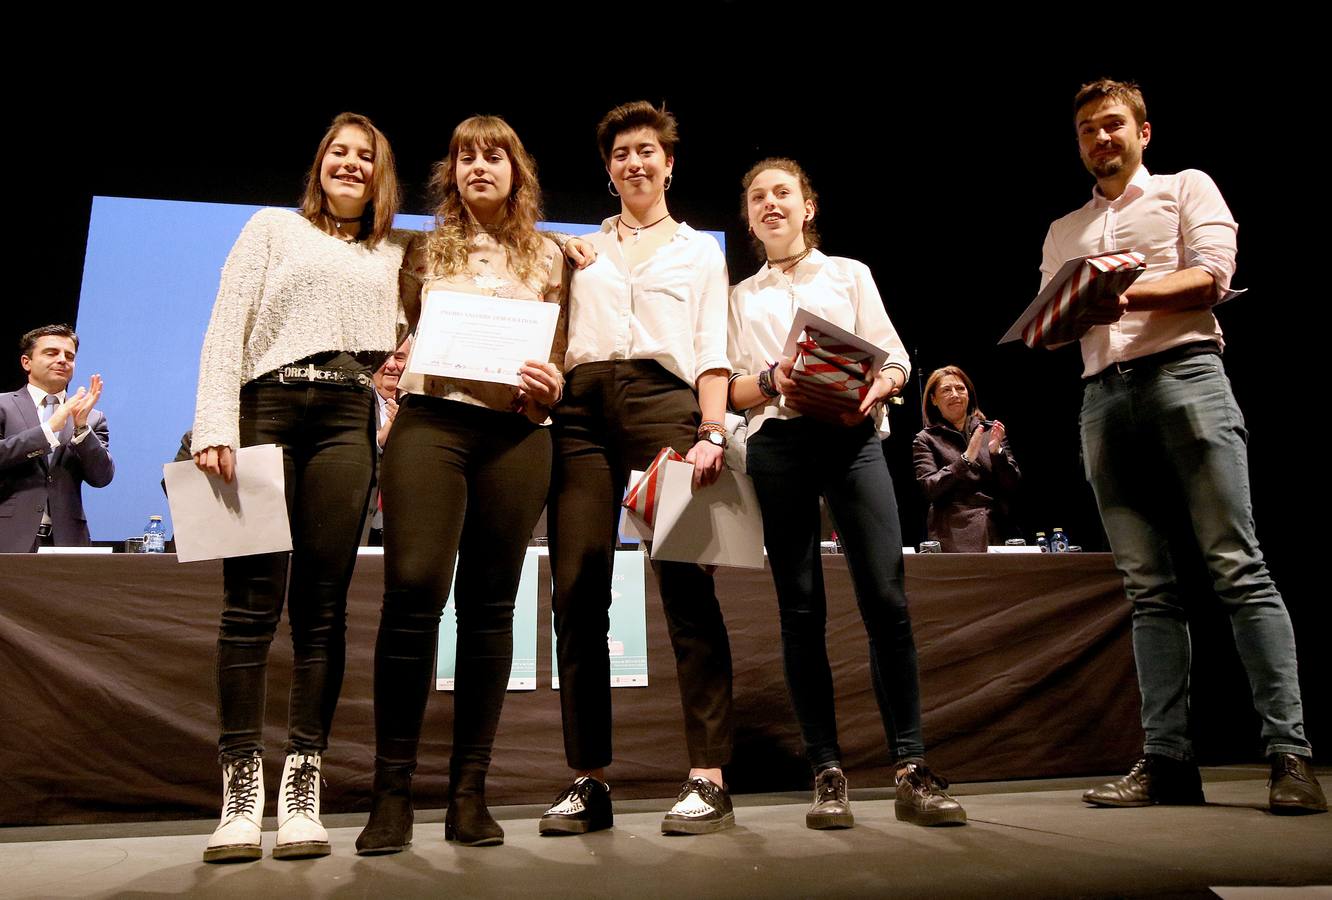 El Instituto Trinidad Arroyo de Palencia ha conseguido el primer puesto en esta primera edición en la que se han presentado 76 vídeos de centros educativos de toda Castilla y León